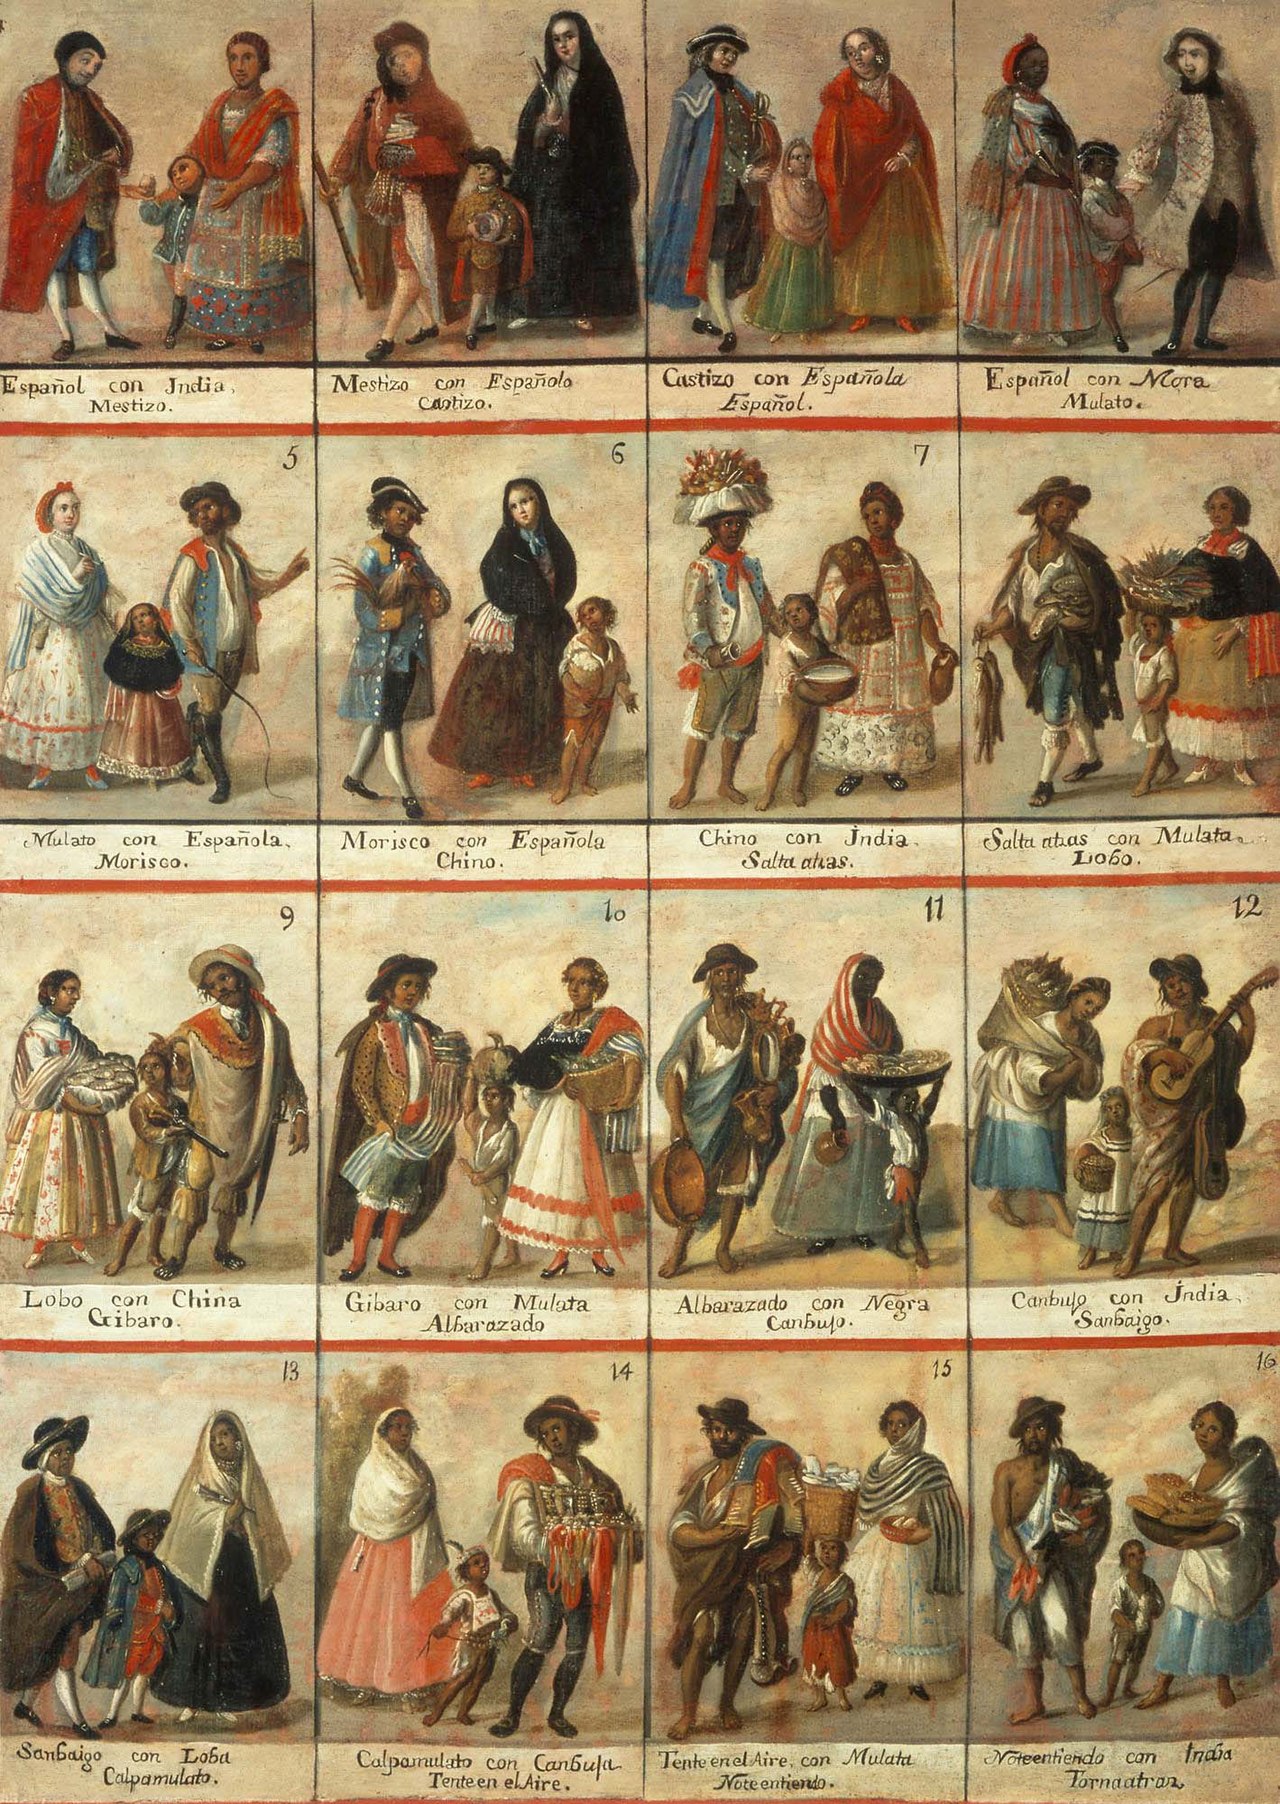 Pintura de castas. Este género de pinturas, muy popular en la época, describía los mestizajes entre los distintos grupos sociales.